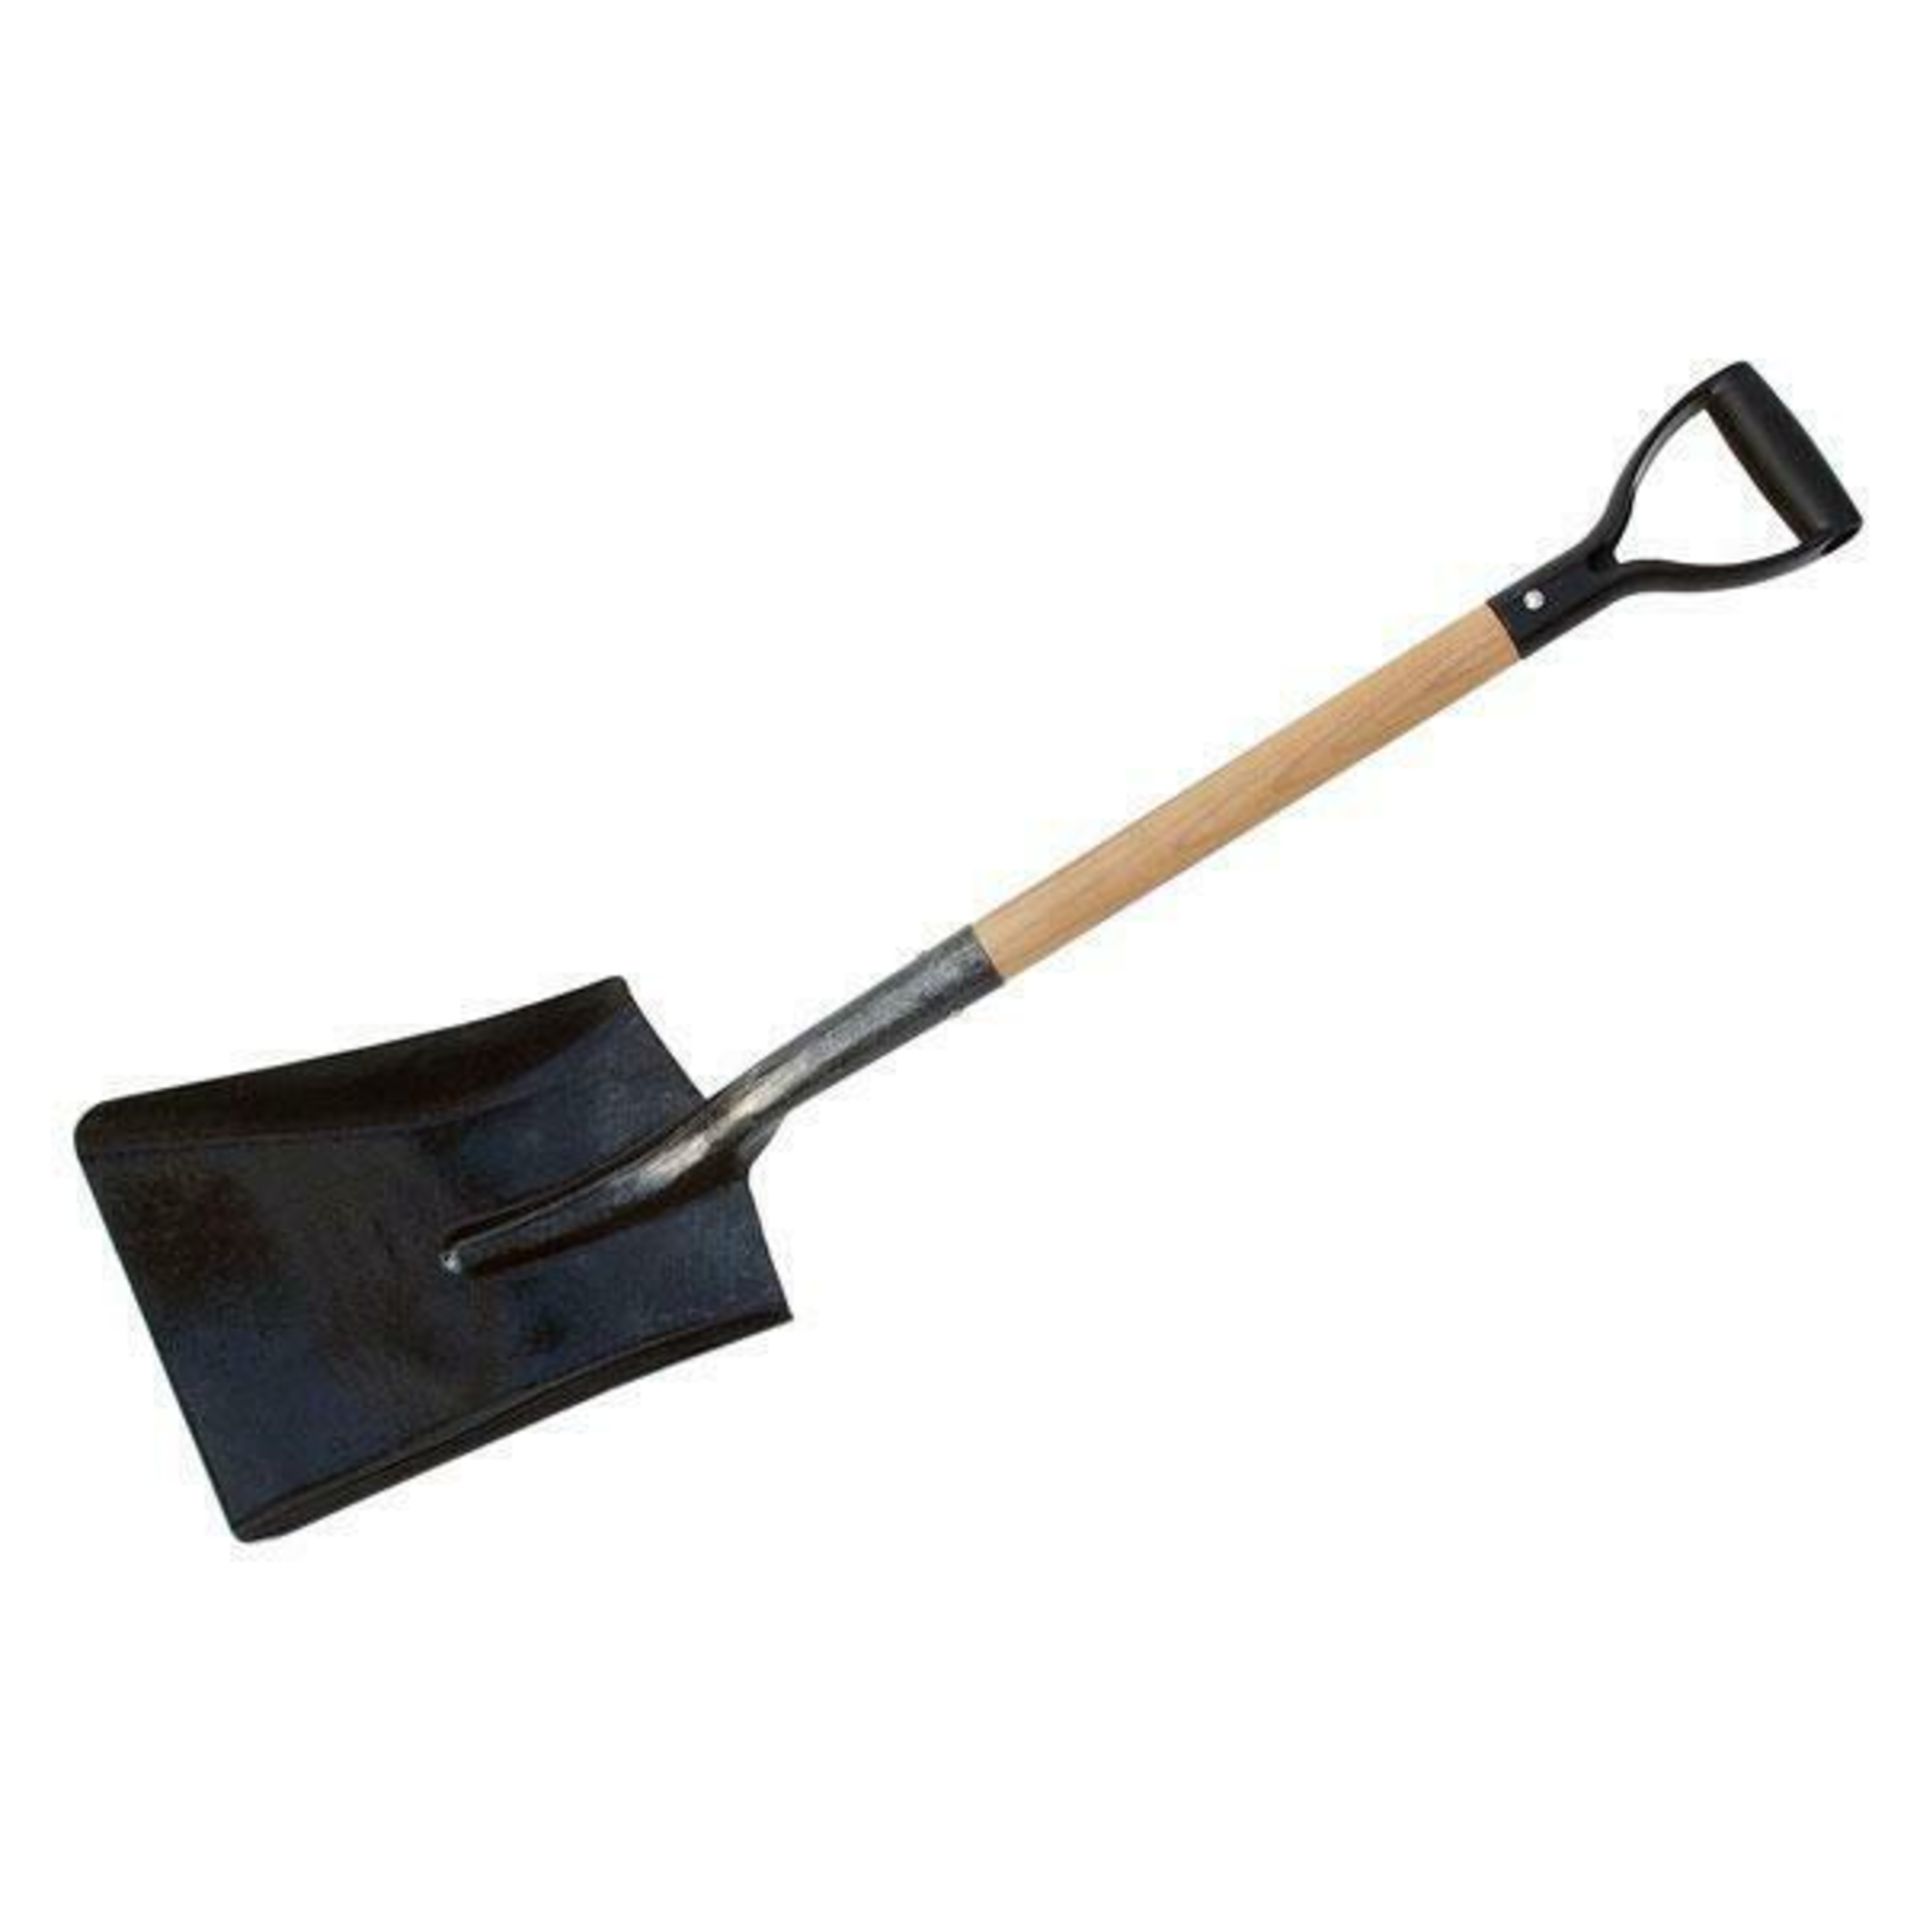 2 x Neilsen Shovels With Wooden Handle